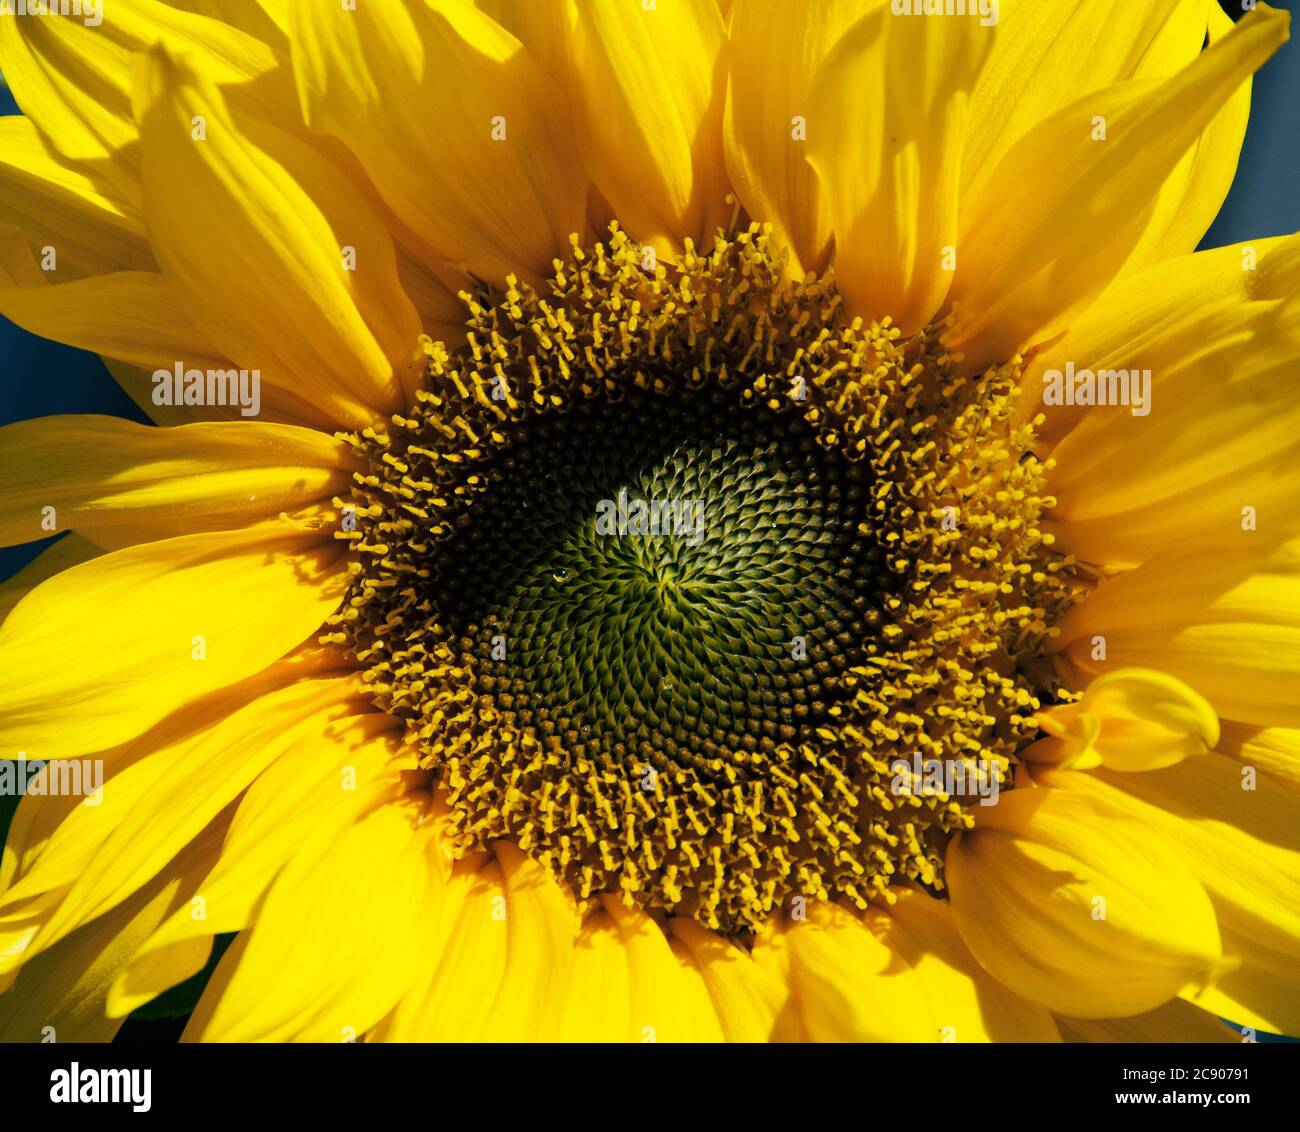 Sunflower and raindrops Stock Photo